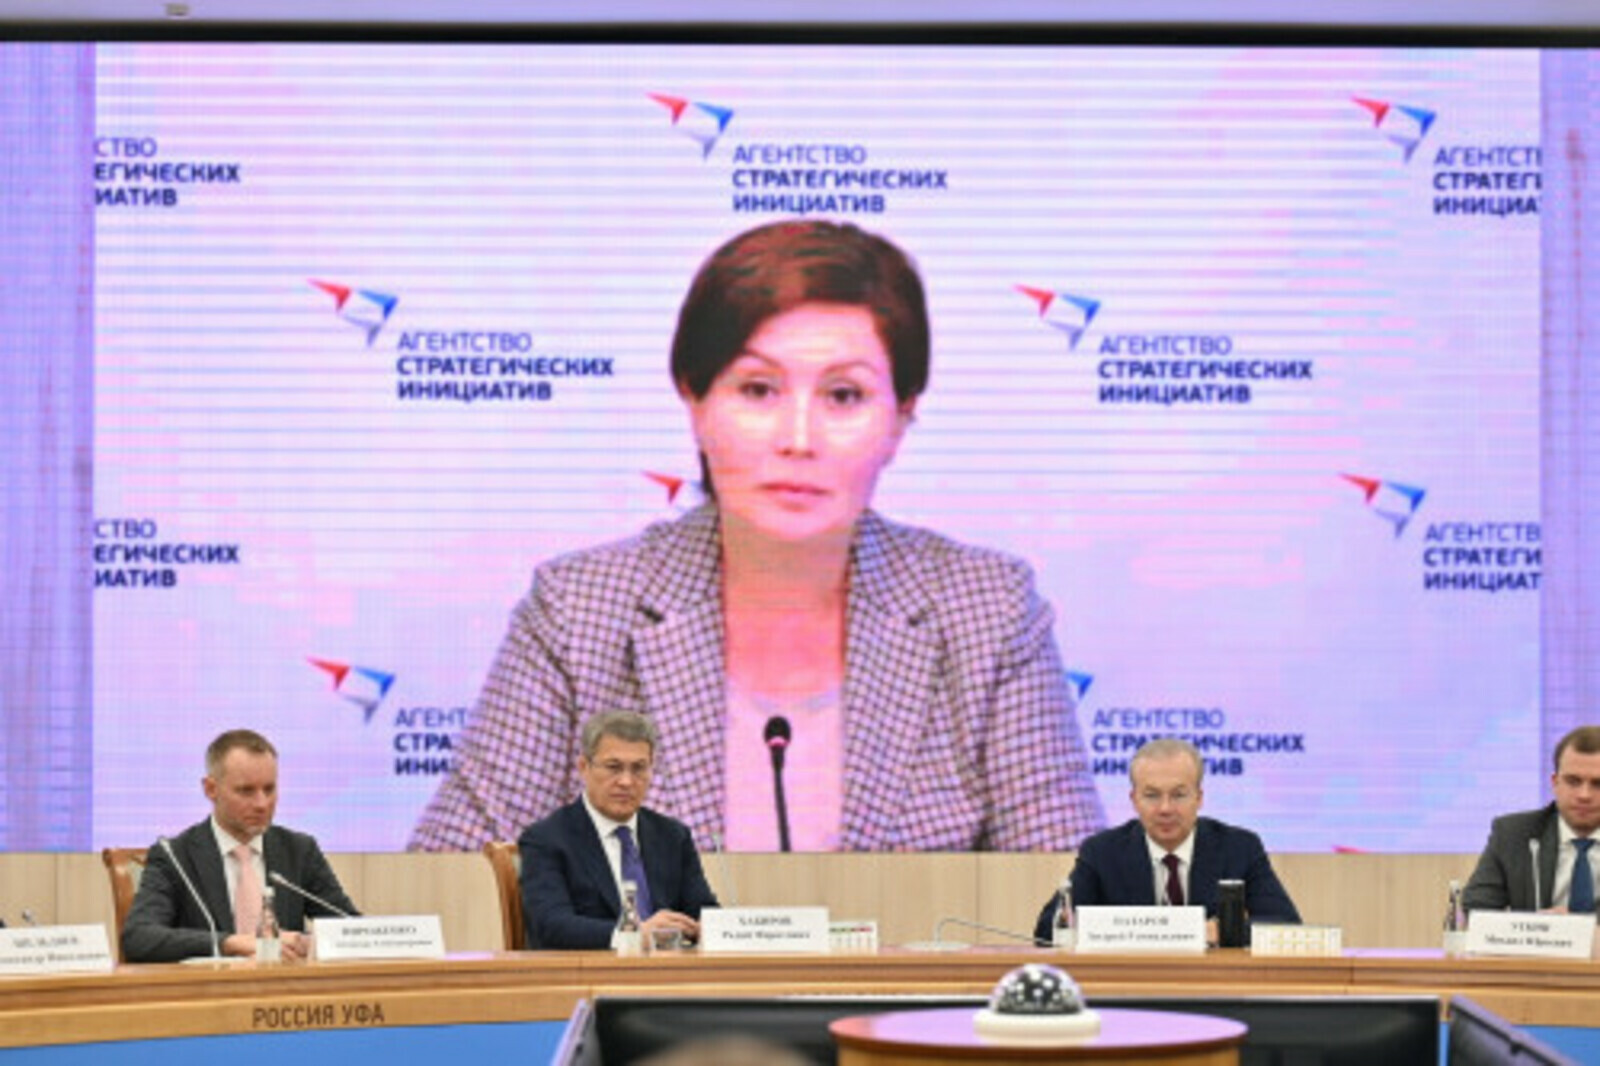 Правительство Башкортостана обозначило направления для работы по трудоустройству людей с ограниченными возможностями здоровья